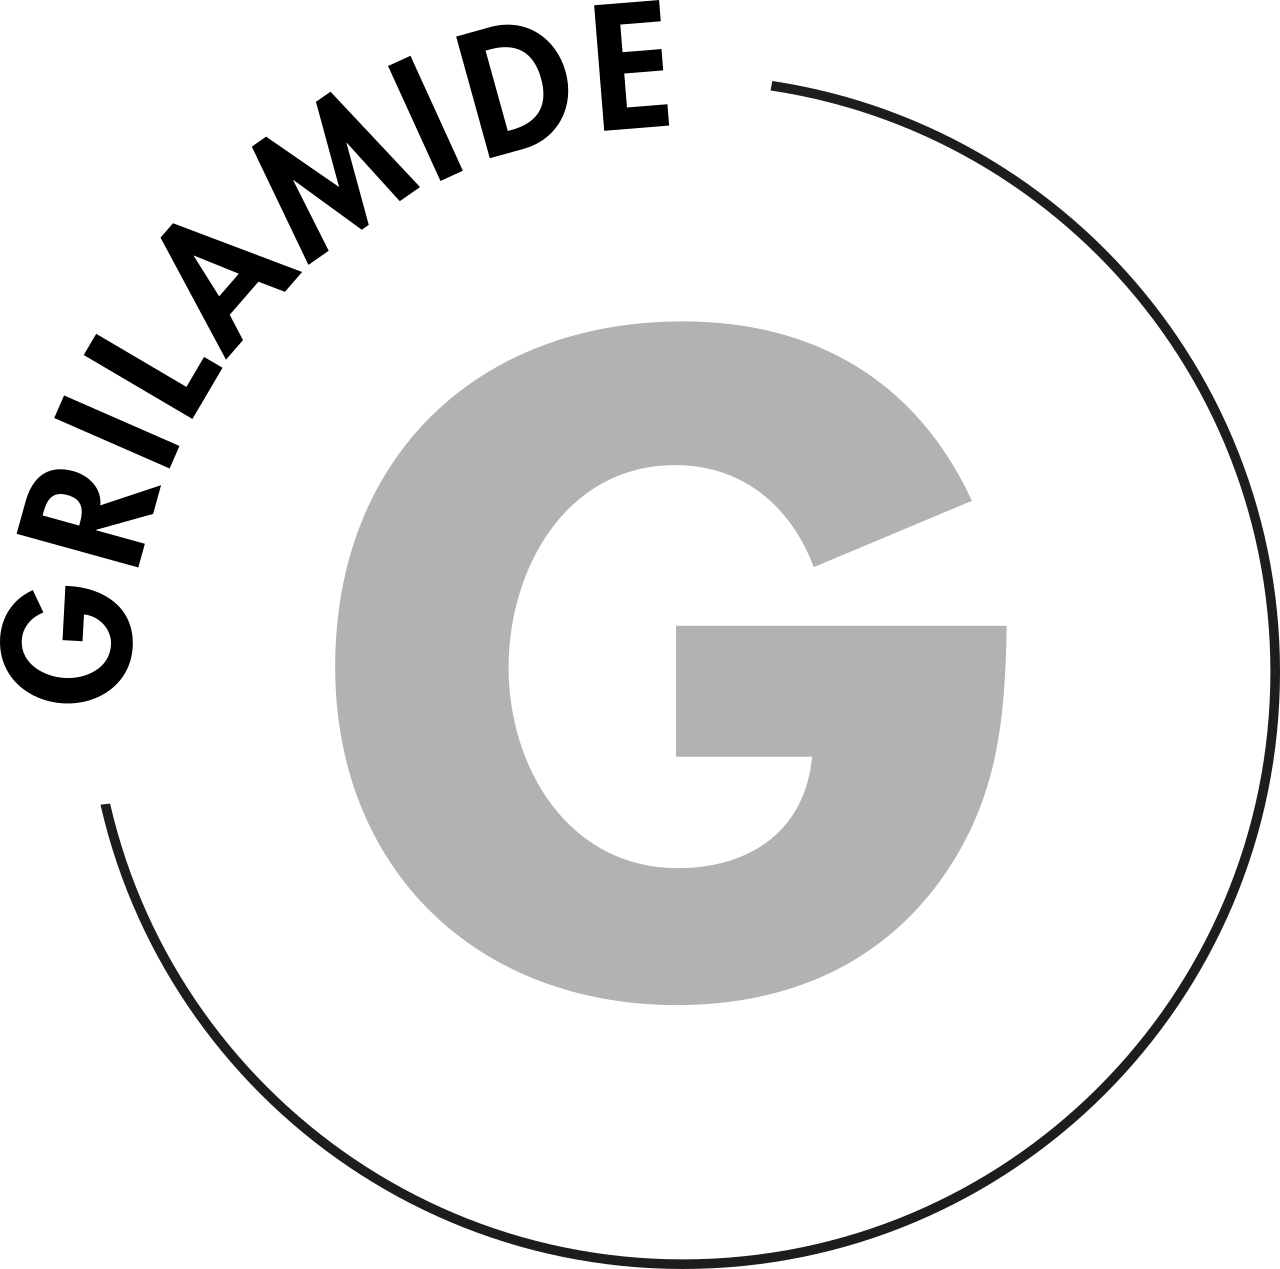 Grilamide